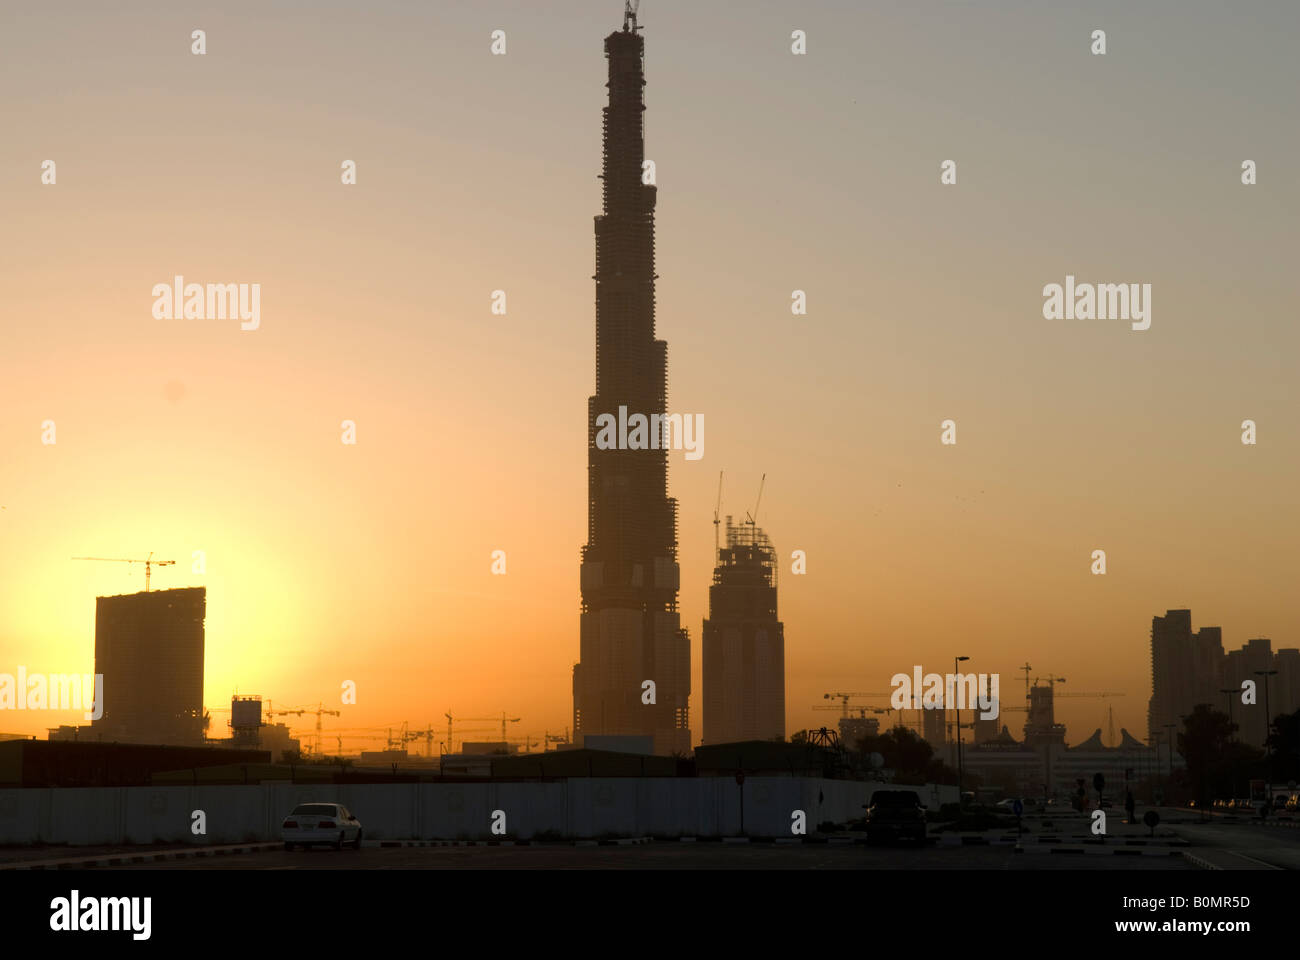 The Burj Dubai tower La tour Burj Dubai en construction Stock Photo